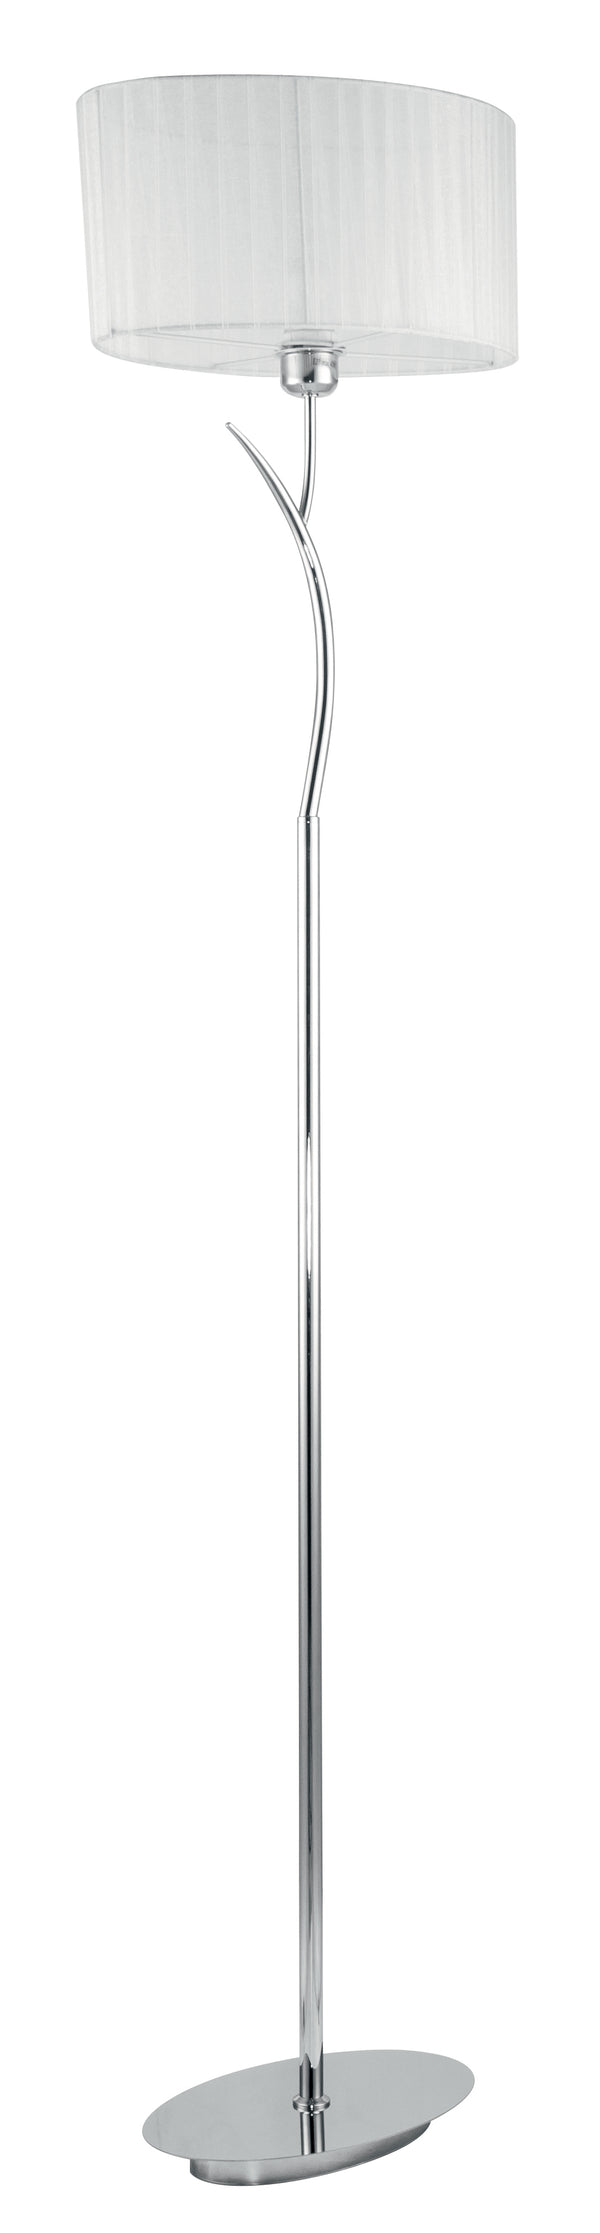 Lampadaire branche en métal, abat-jour en organza blanc, lampadaire moderne E27 acquista